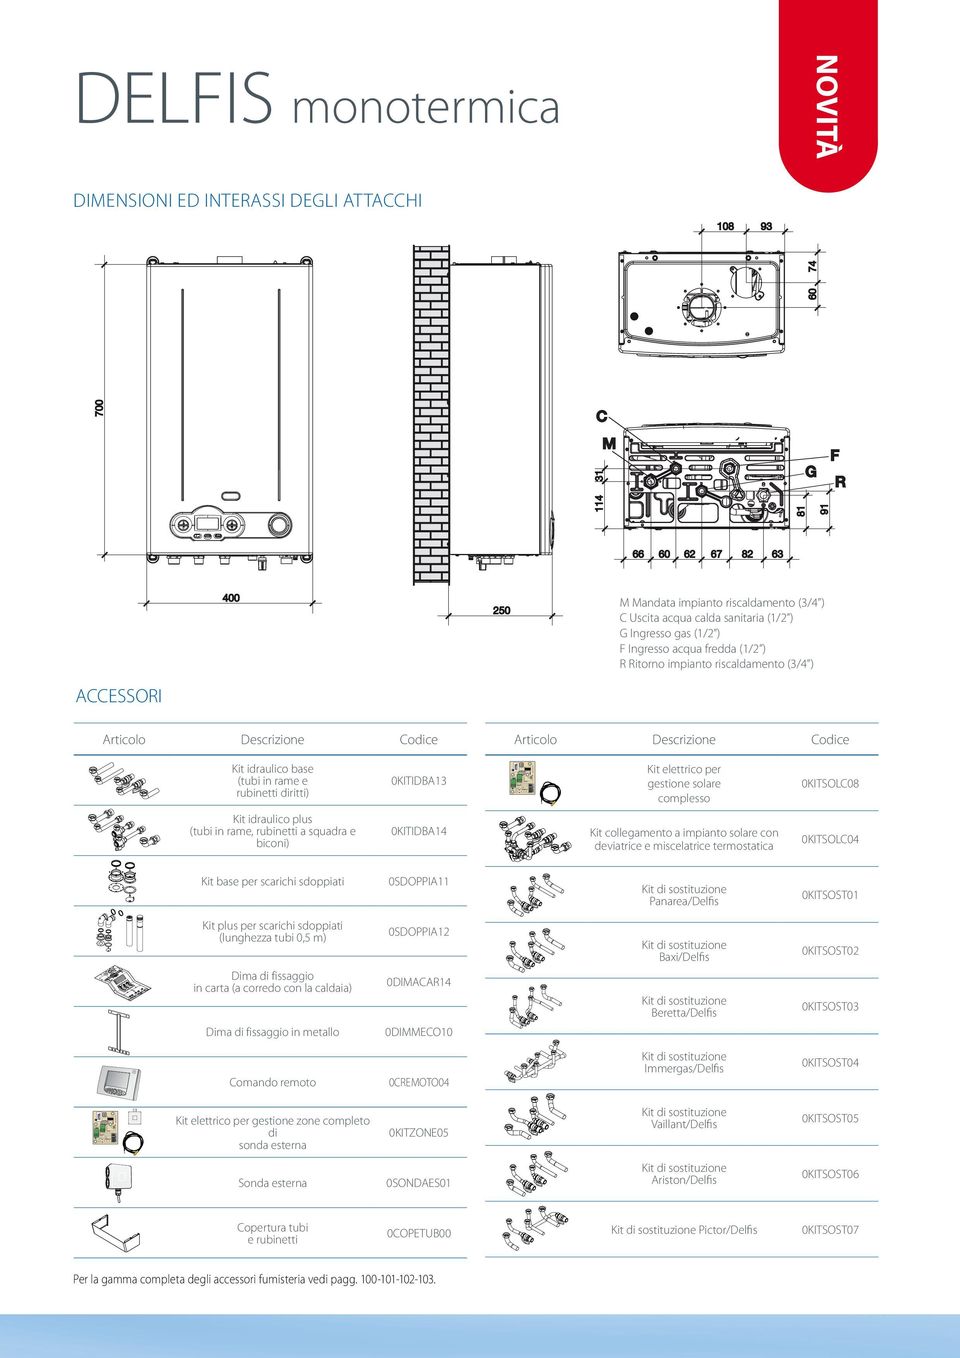 000-05/2003) Articolo Descrizione Codice Kit idraulico base (tubi in rame e rubinetti diritti) 0KITIDBA13 Kit idraulico plus (tubi in rame, rubinetti a squadra e biconi) 0KITIDBA14 Kit base per